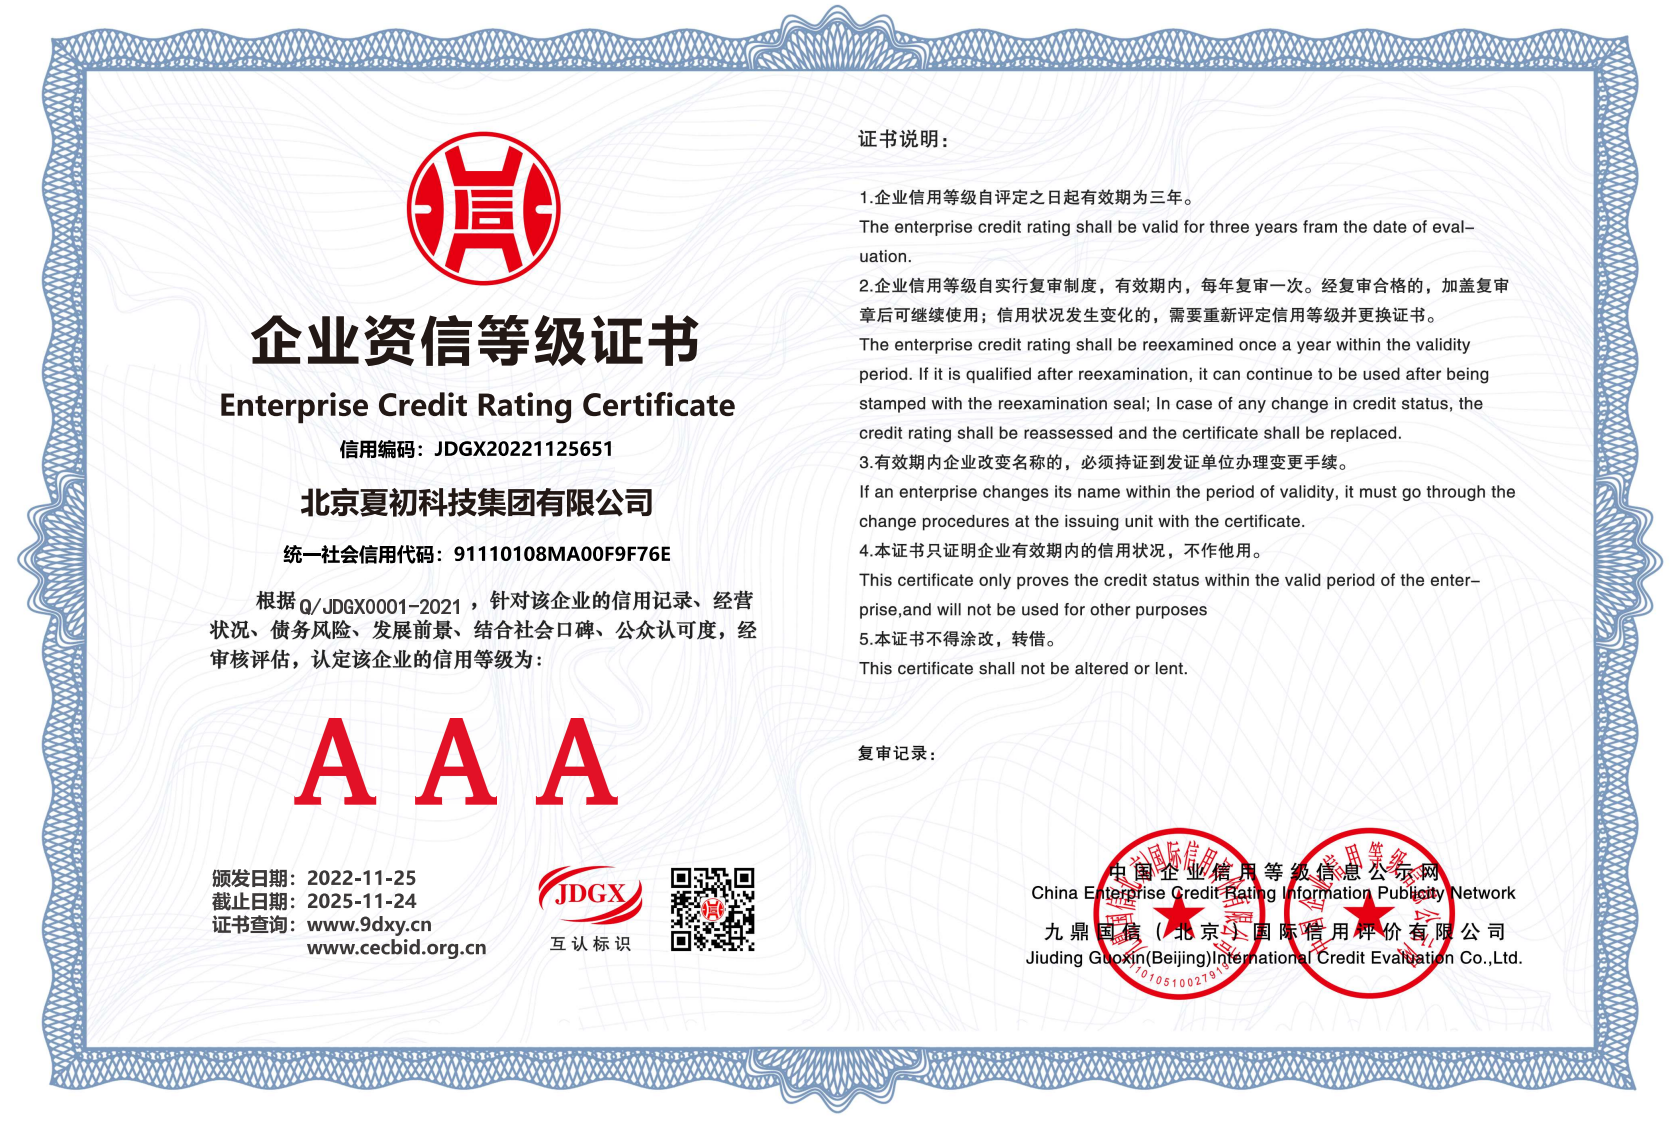 北京夏初科技集团有限公司-企业资信等级证书